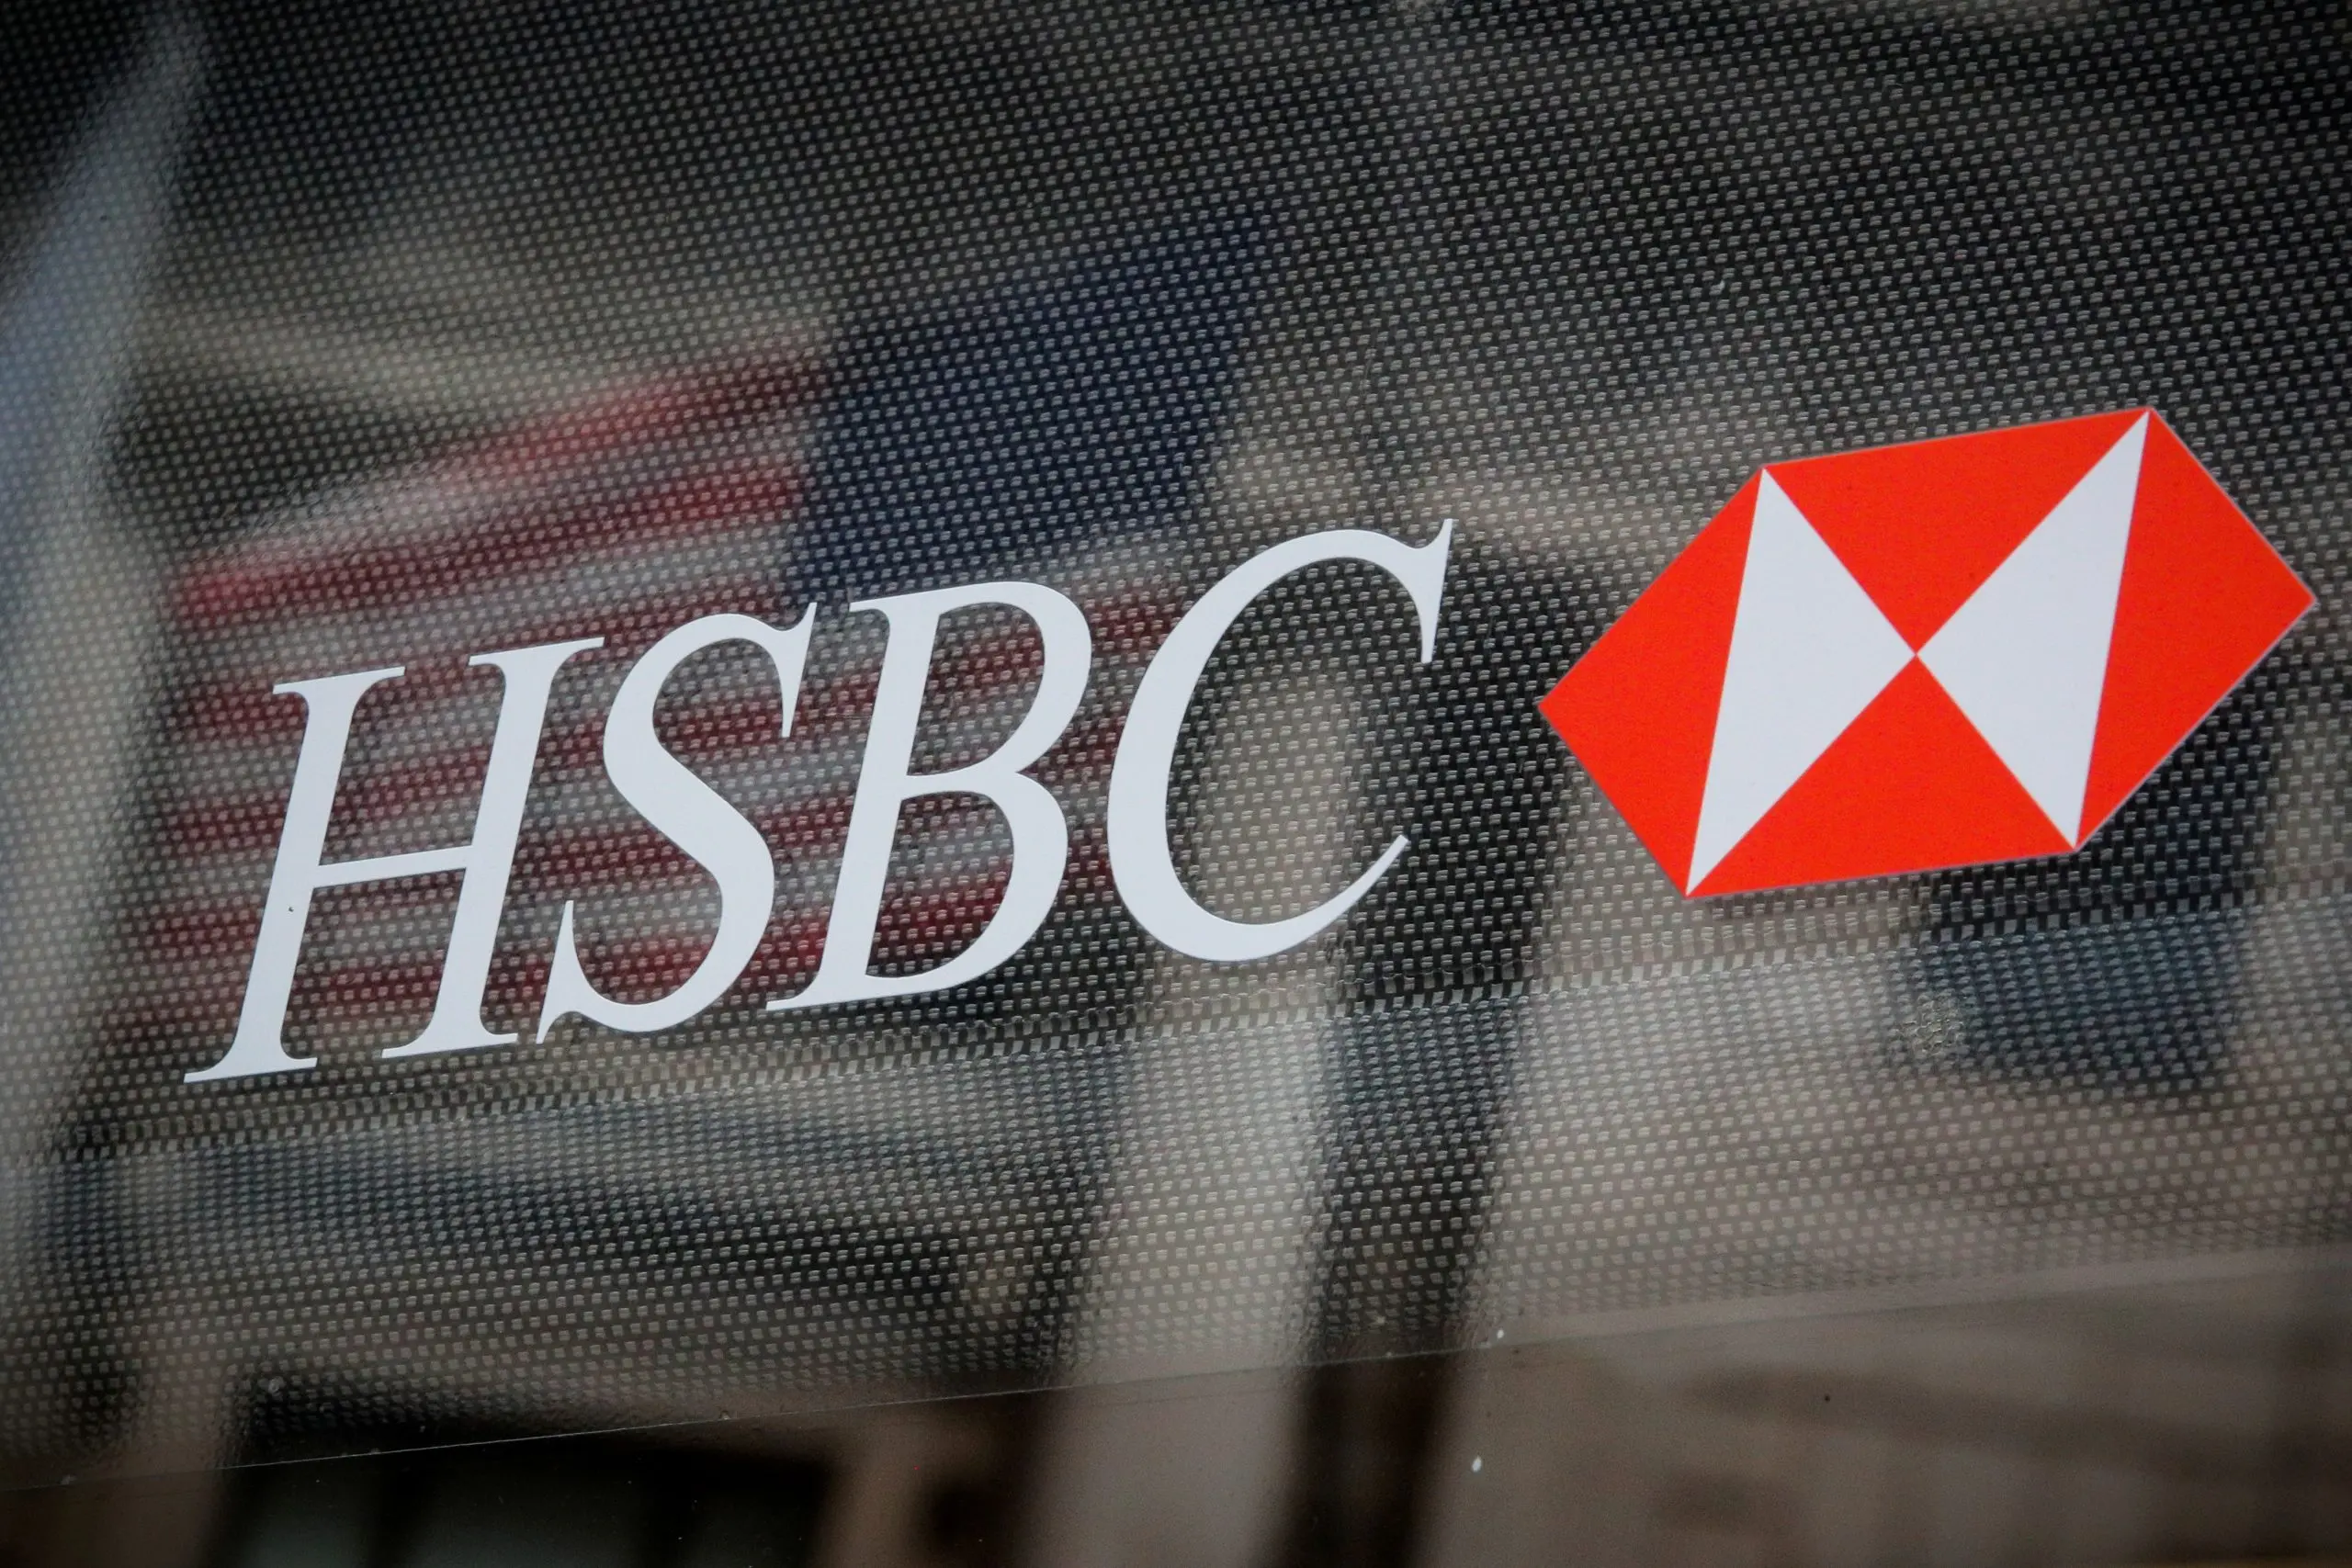 HSBC reembolsará hasta el 25% de tus gastos si abres una cuenta con ellos